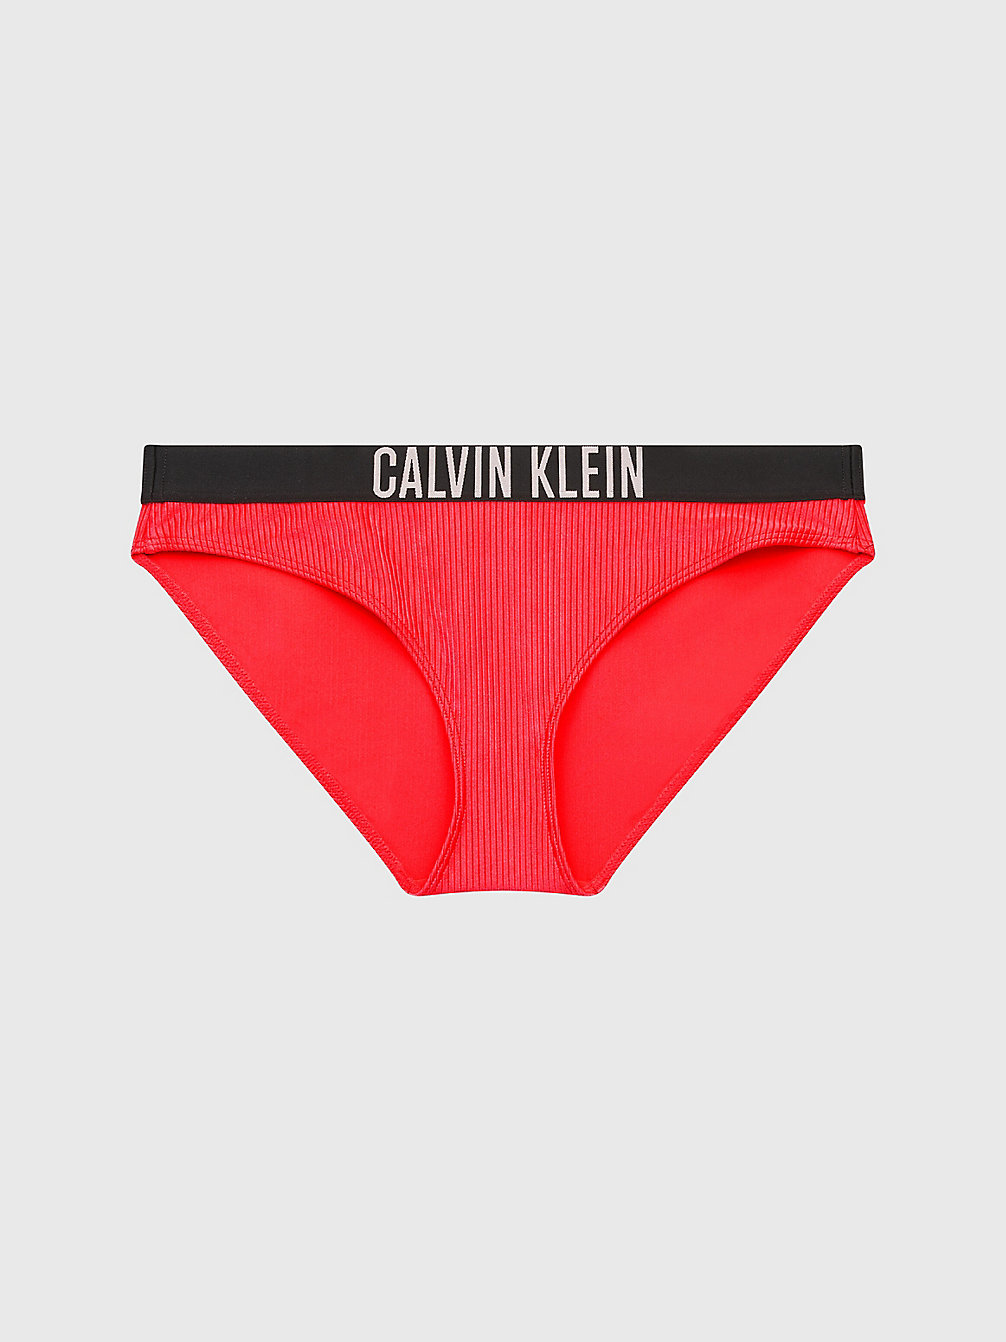 Slip Bikini - Intense Power > CORAL CRUSH > undefined donna > Calvin Klein